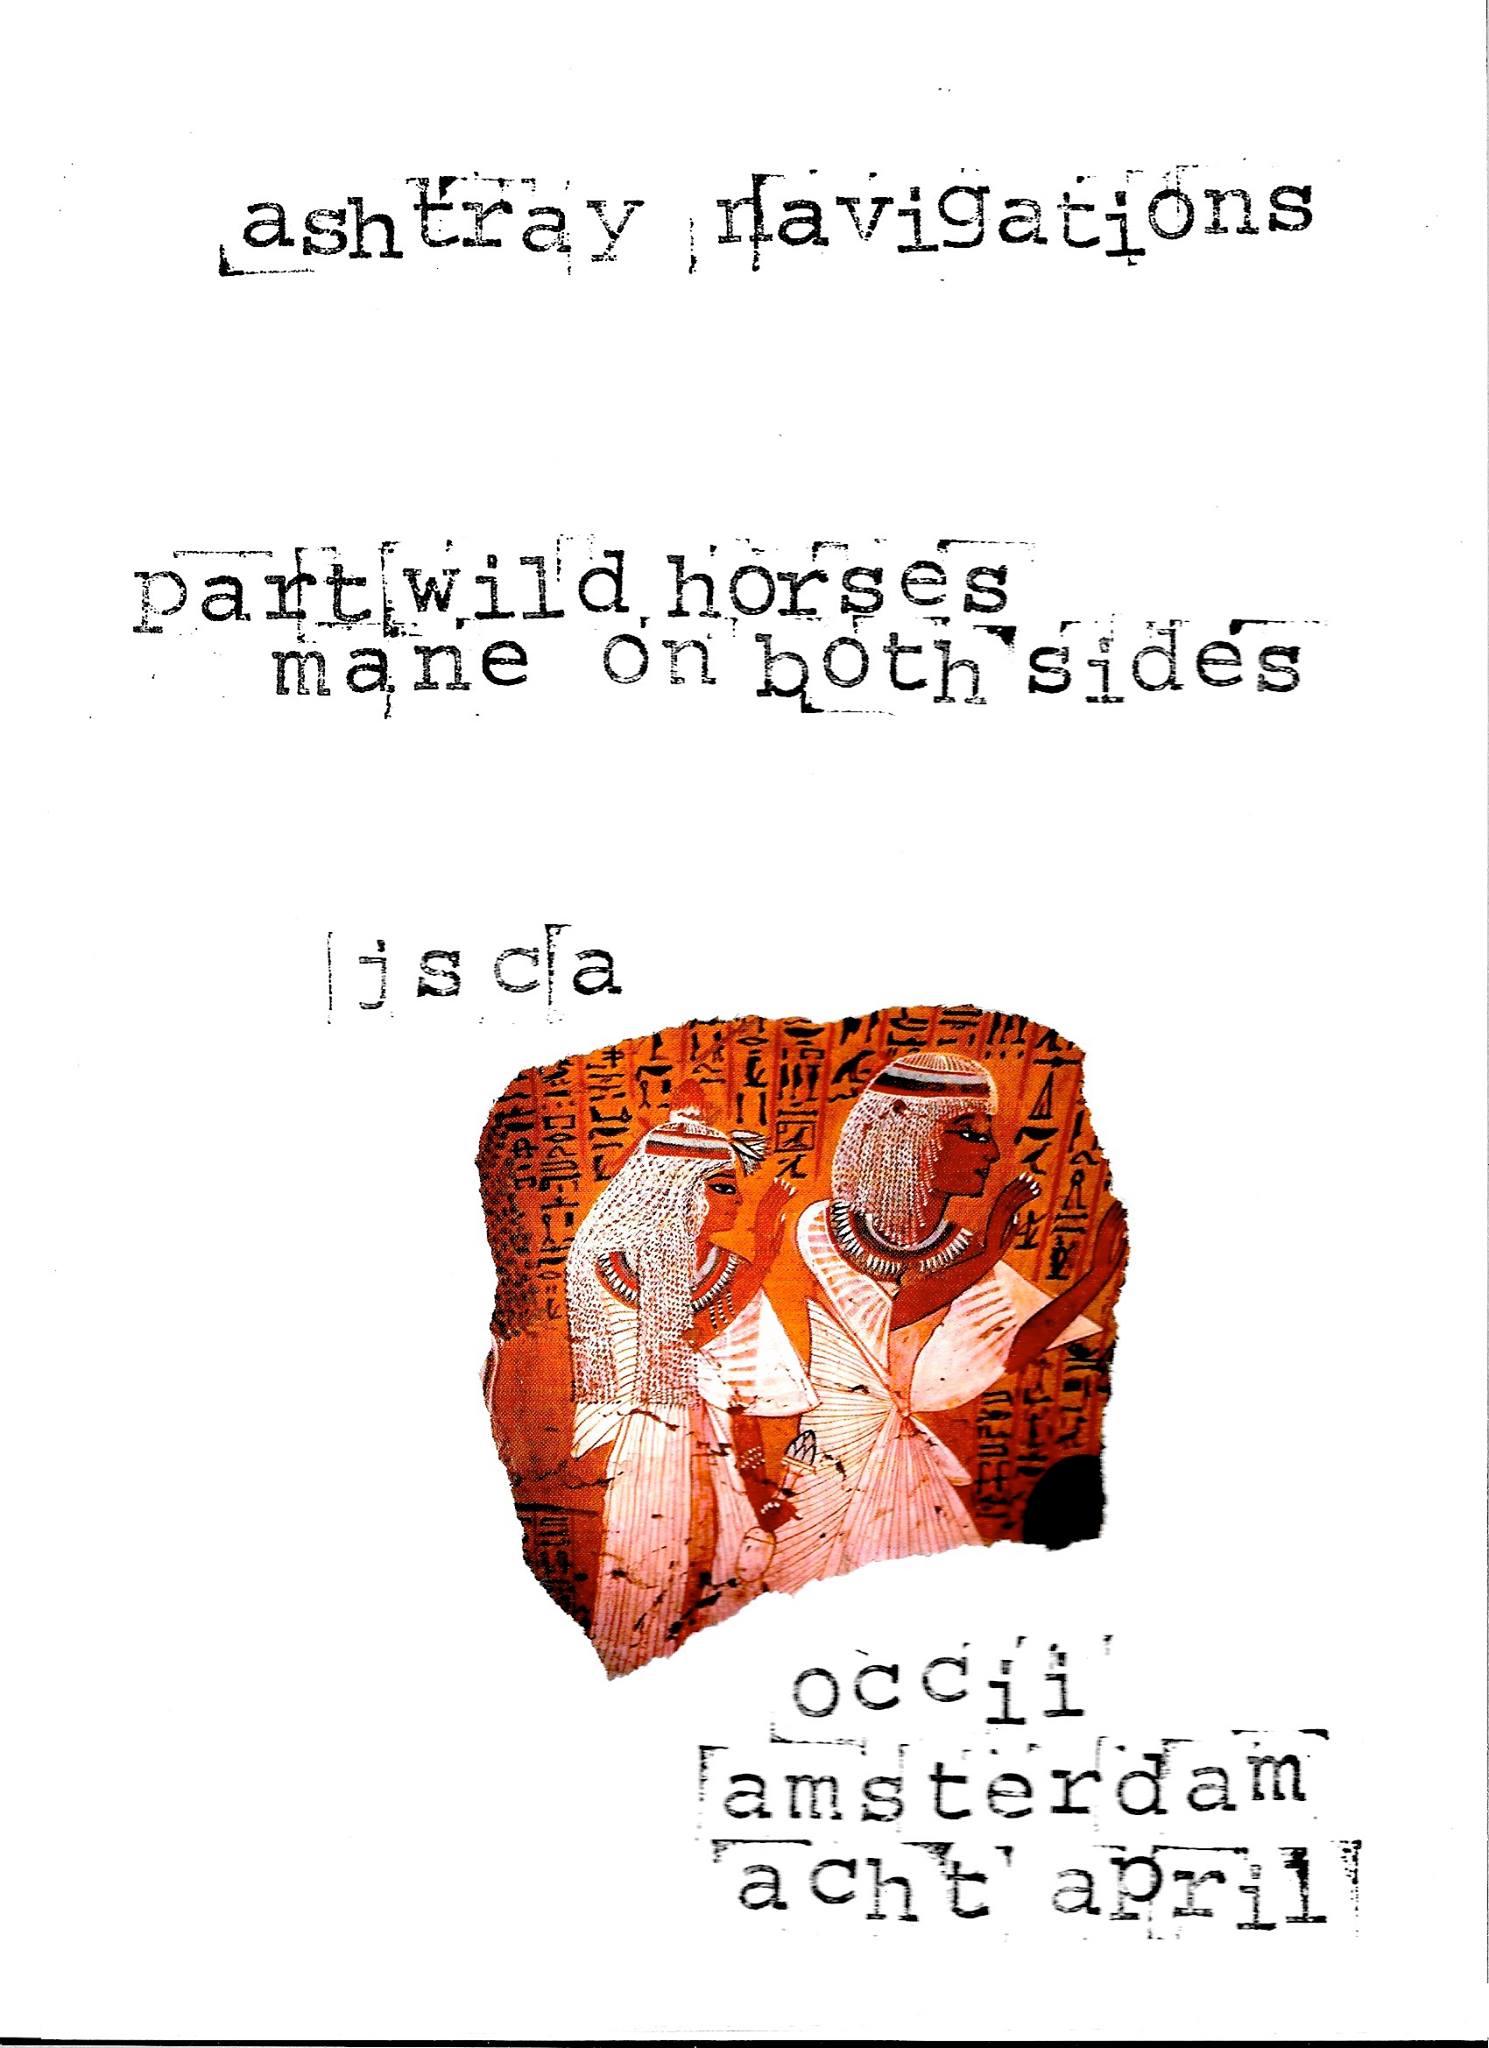 ASHTRAY NAVIGATION (uk) + PART WILD HORSES MANE ON BOTH SIDES (uk) + JSCA